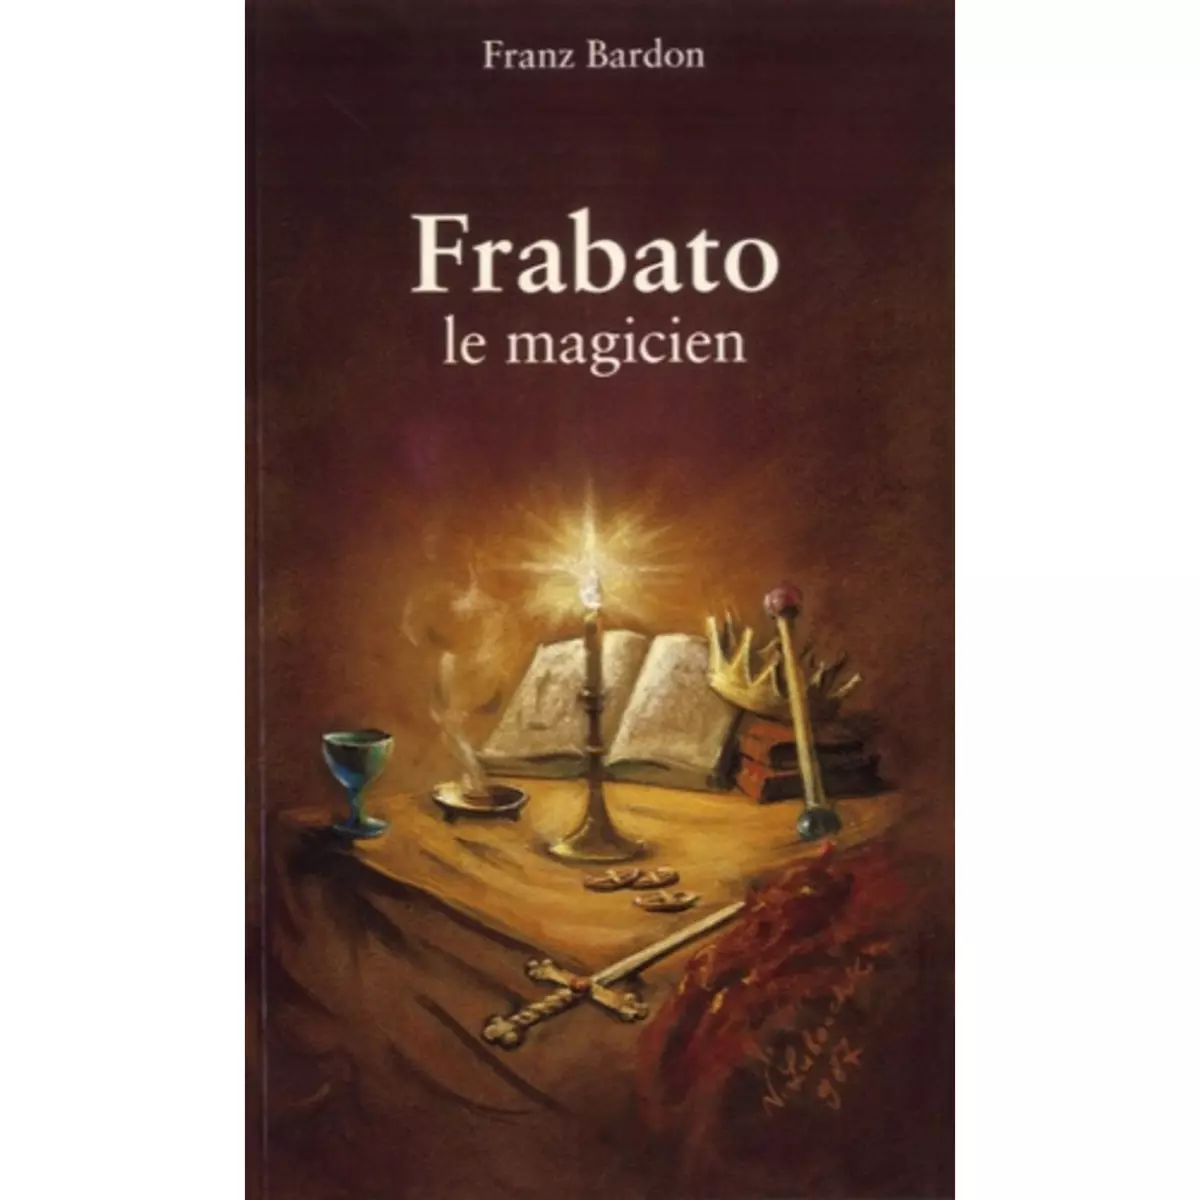  FRABATO LE MAGICIEN, Bardon Franz